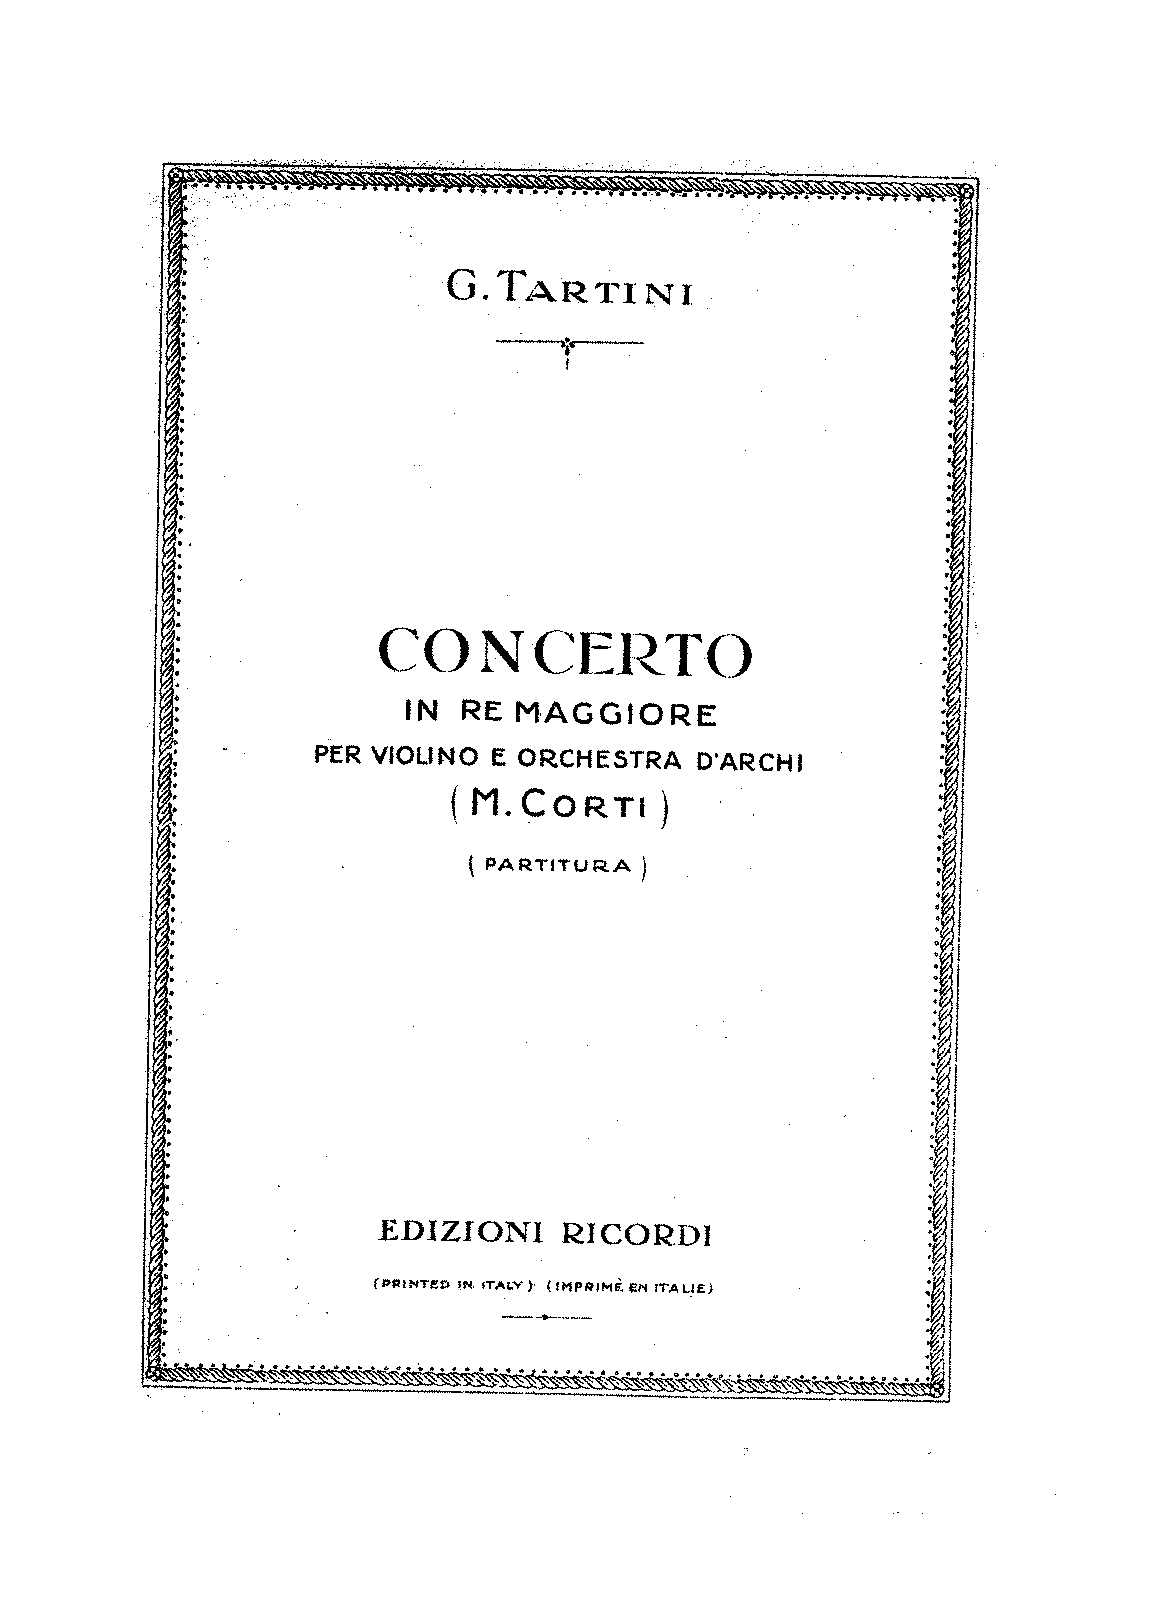 Violin Concerto in D major, GT 1.D15 (Tartini, Giuseppe) - IMSLP